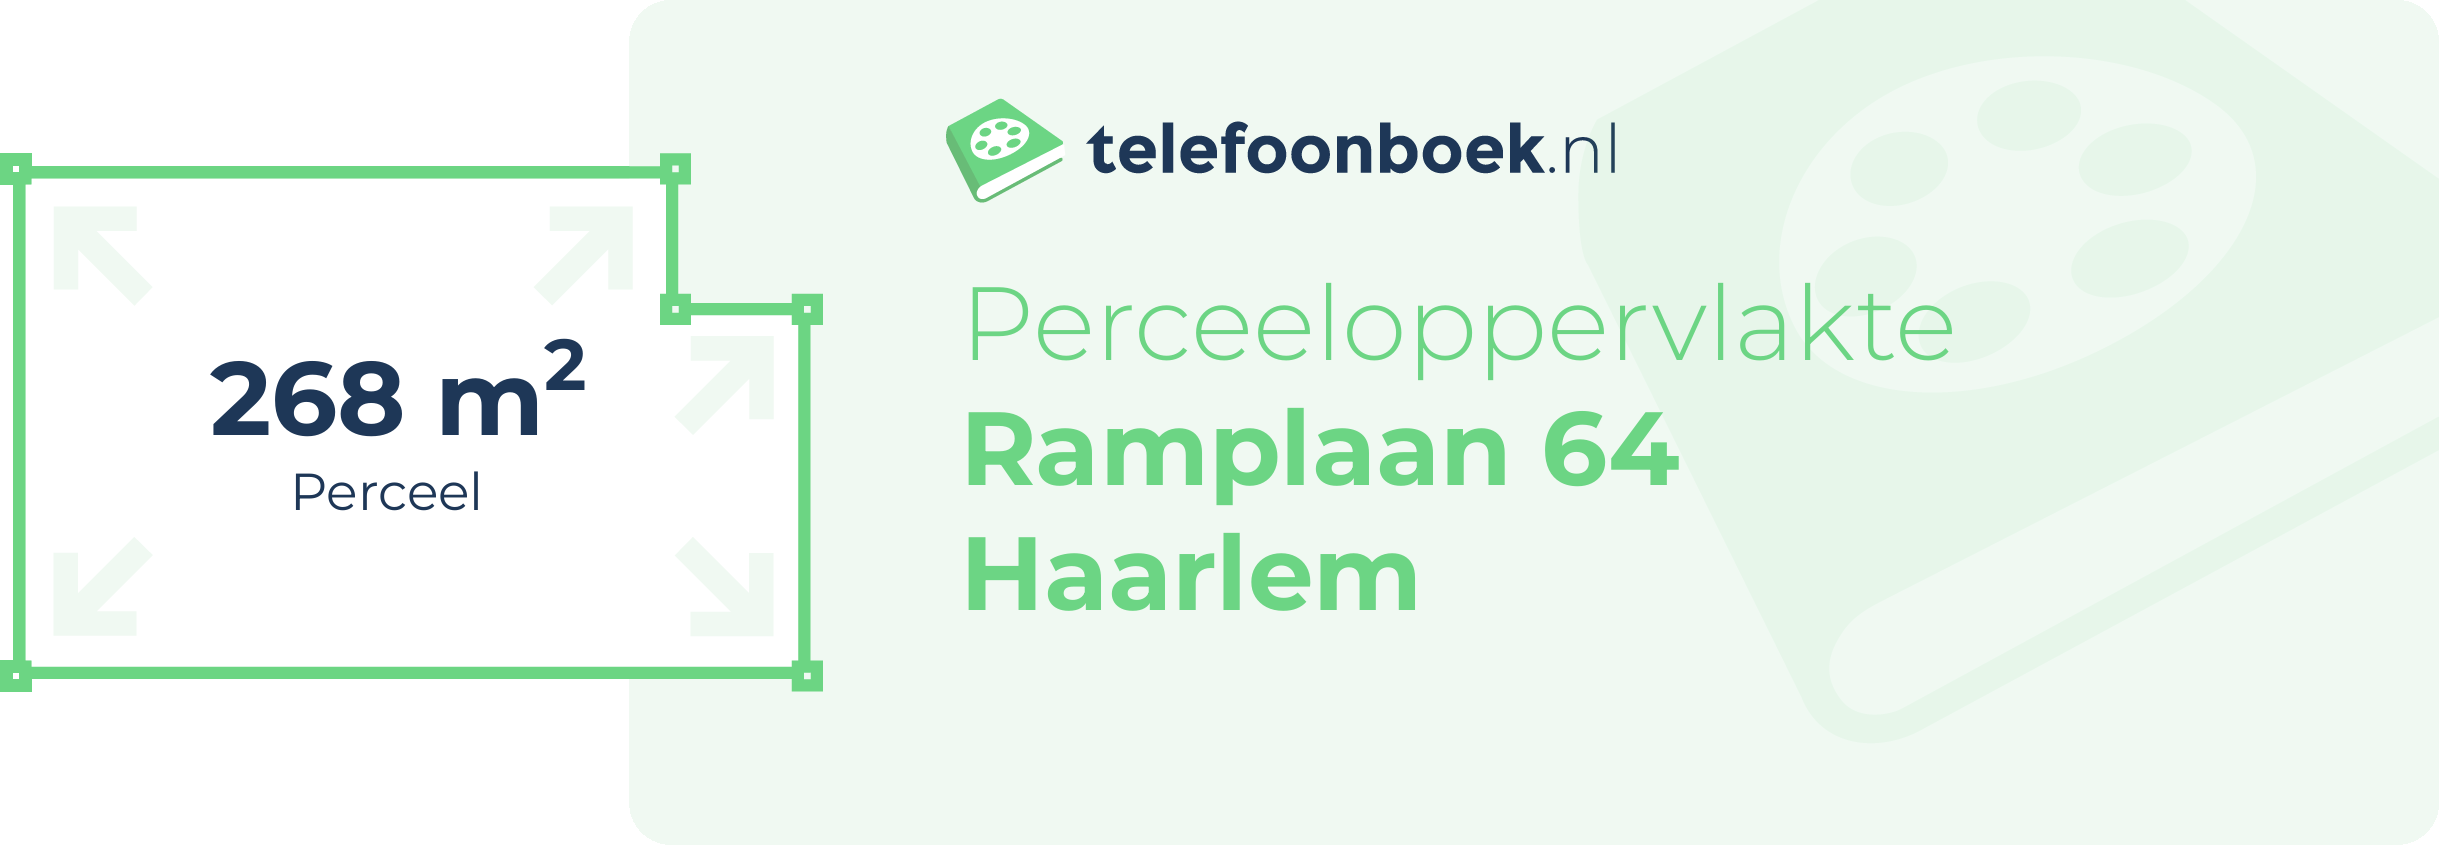 Perceeloppervlakte Ramplaan 64 Haarlem